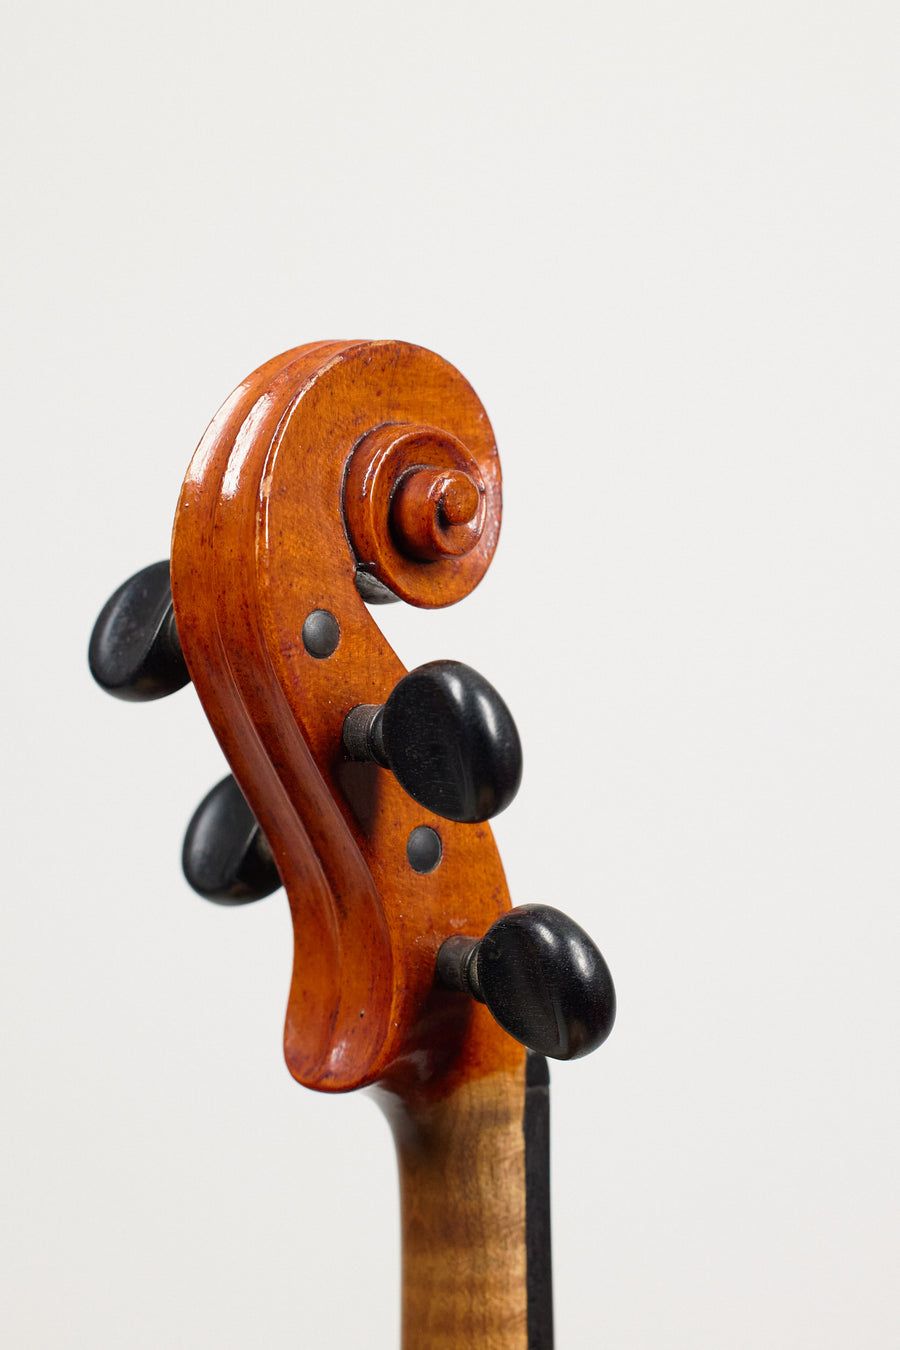 A Good Danish Violin by Henrik Hvilsted, 1934.